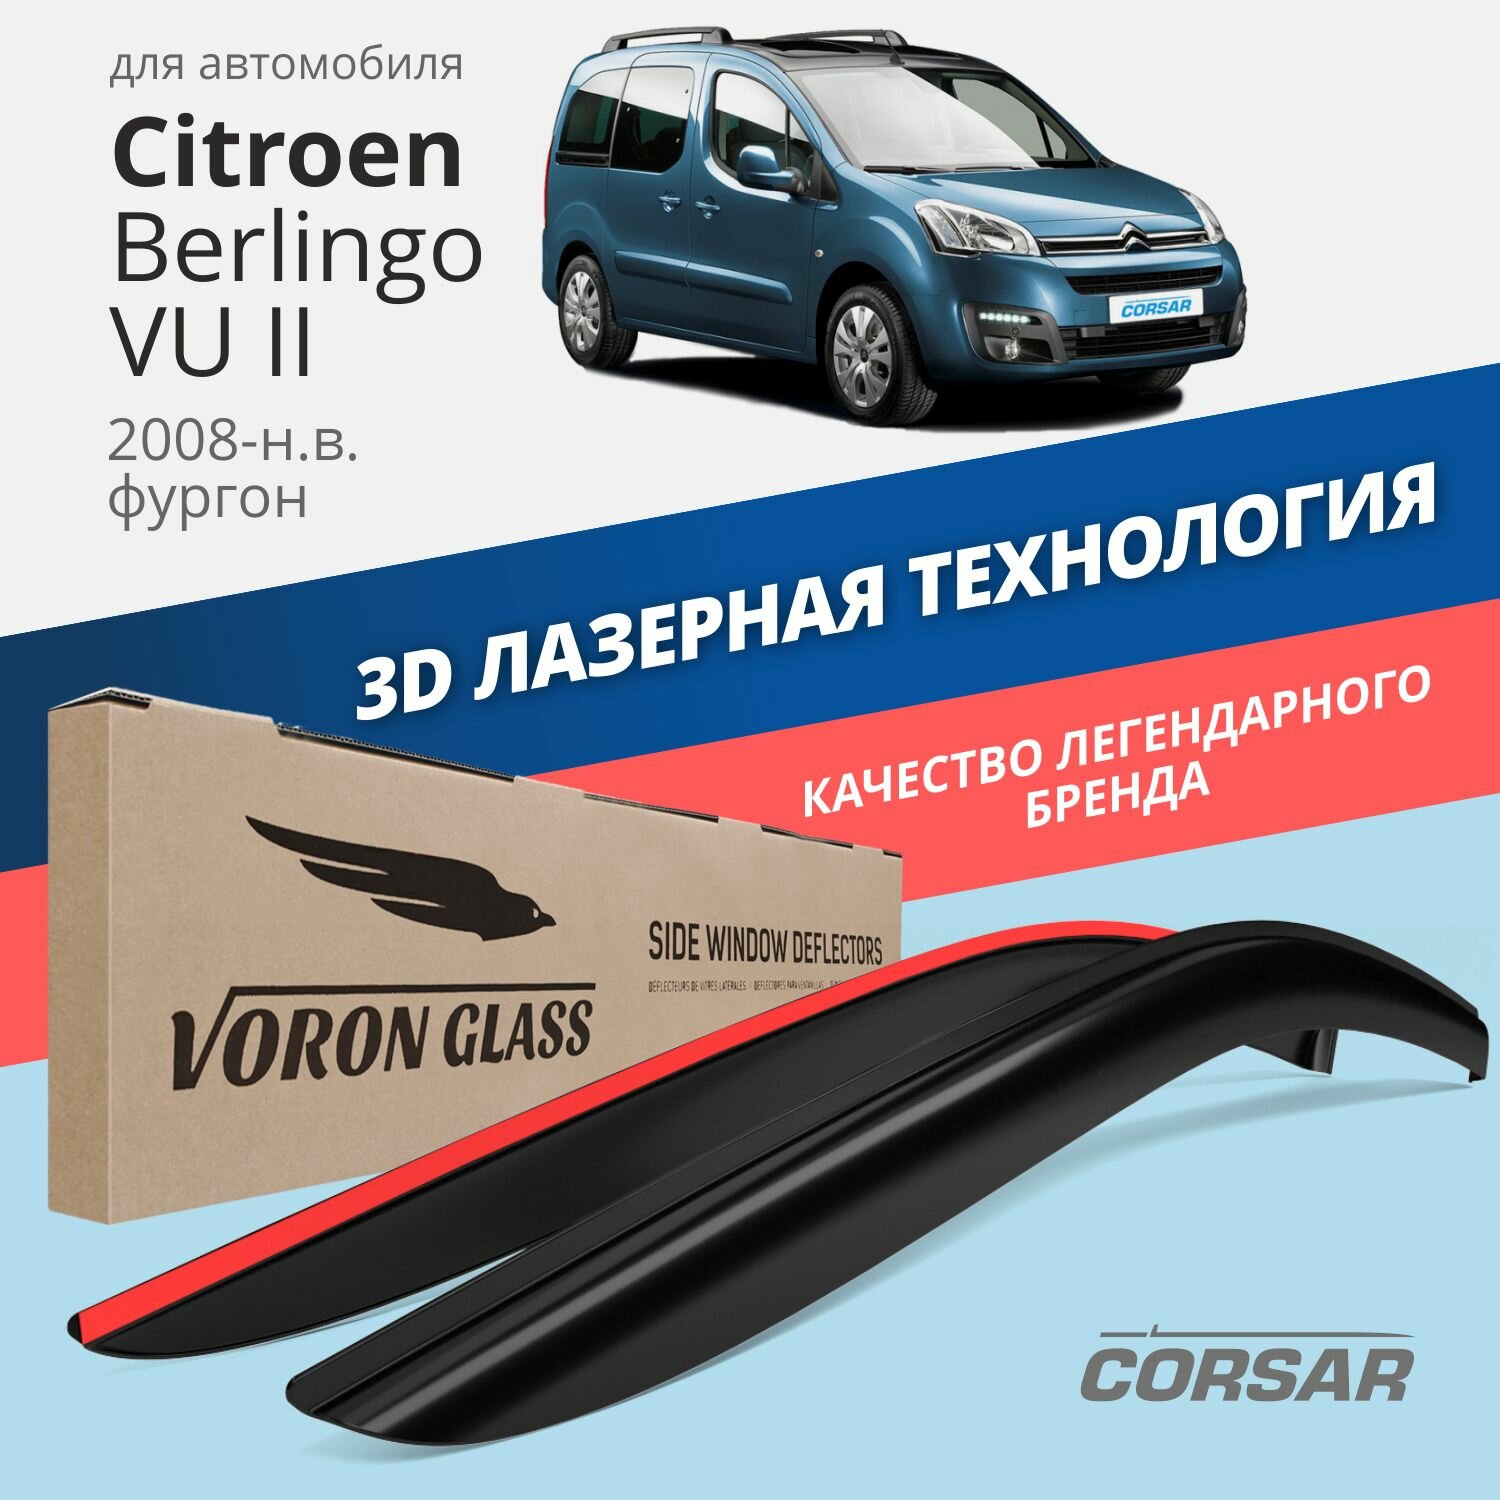 Дефлекторы окон Voron Glass серия Corsar для Citroen Berlingo VU II 2008-н. в. накладные 2 шт.